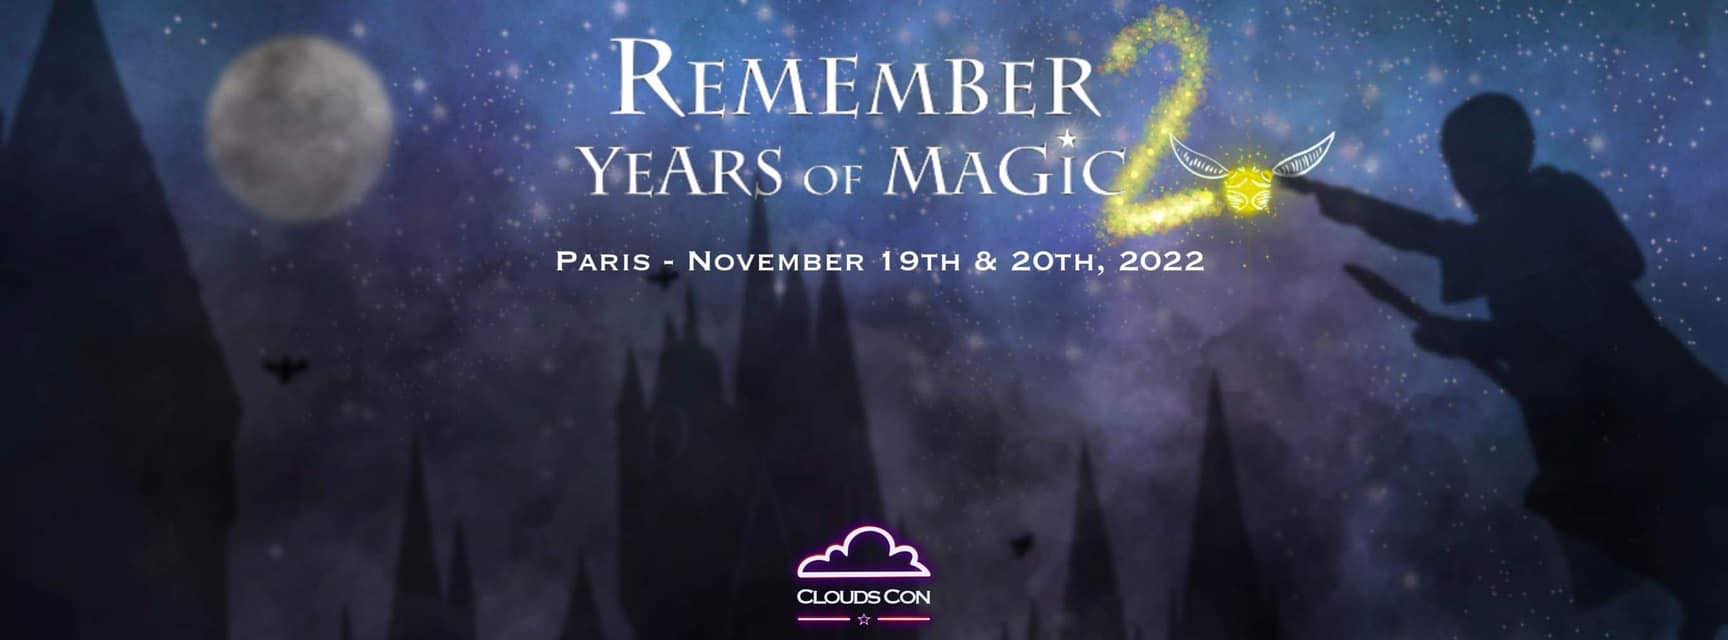 Toutes les infos sur la convention Harry Potter à Paris